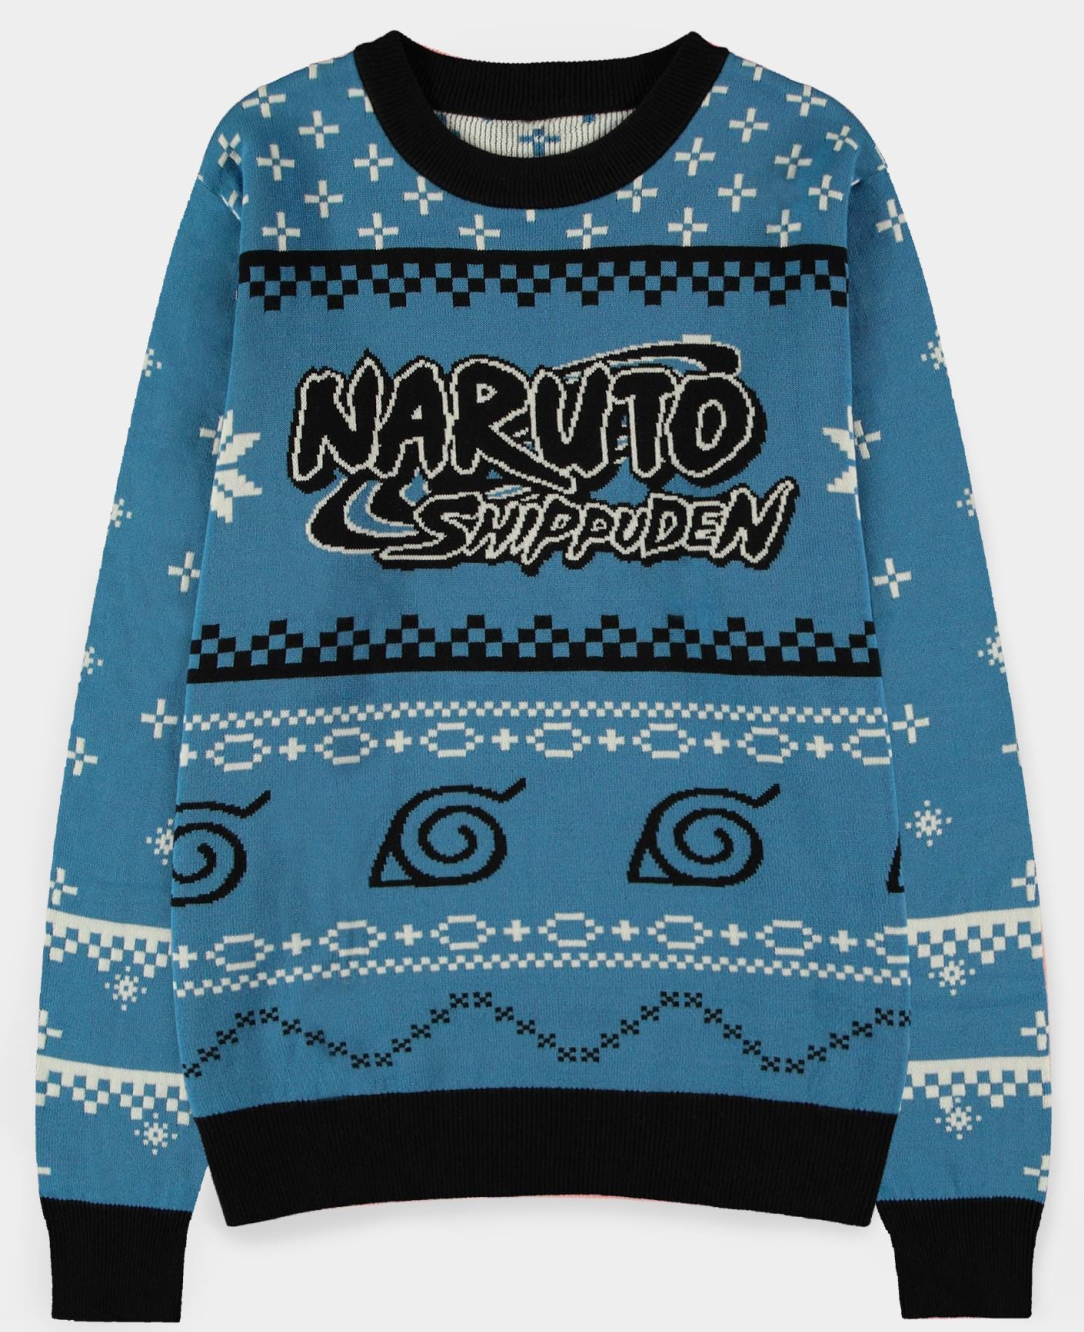 Abbigliamento Naruto Shippuden: Christmas Jumper Multicolor (Maglione Unisex Tg. 2XL) NUOVO SIGILLATO, EDIZIONE DEL 25/04/2022 SUBITO DISPONIBILE